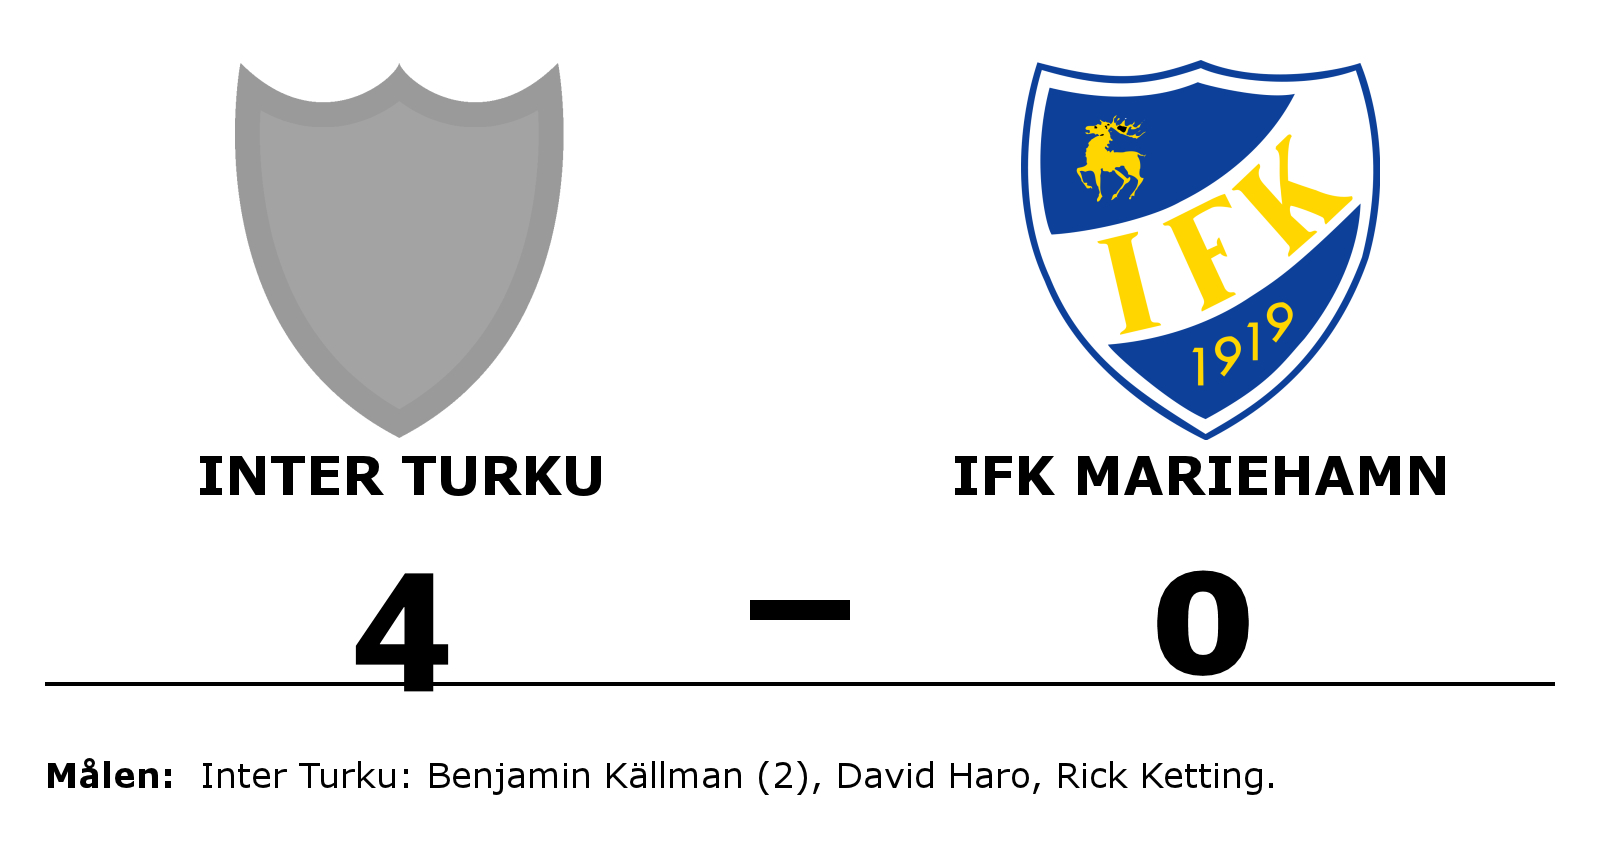 FC Inter Turku vann mot IFK Mariehamn